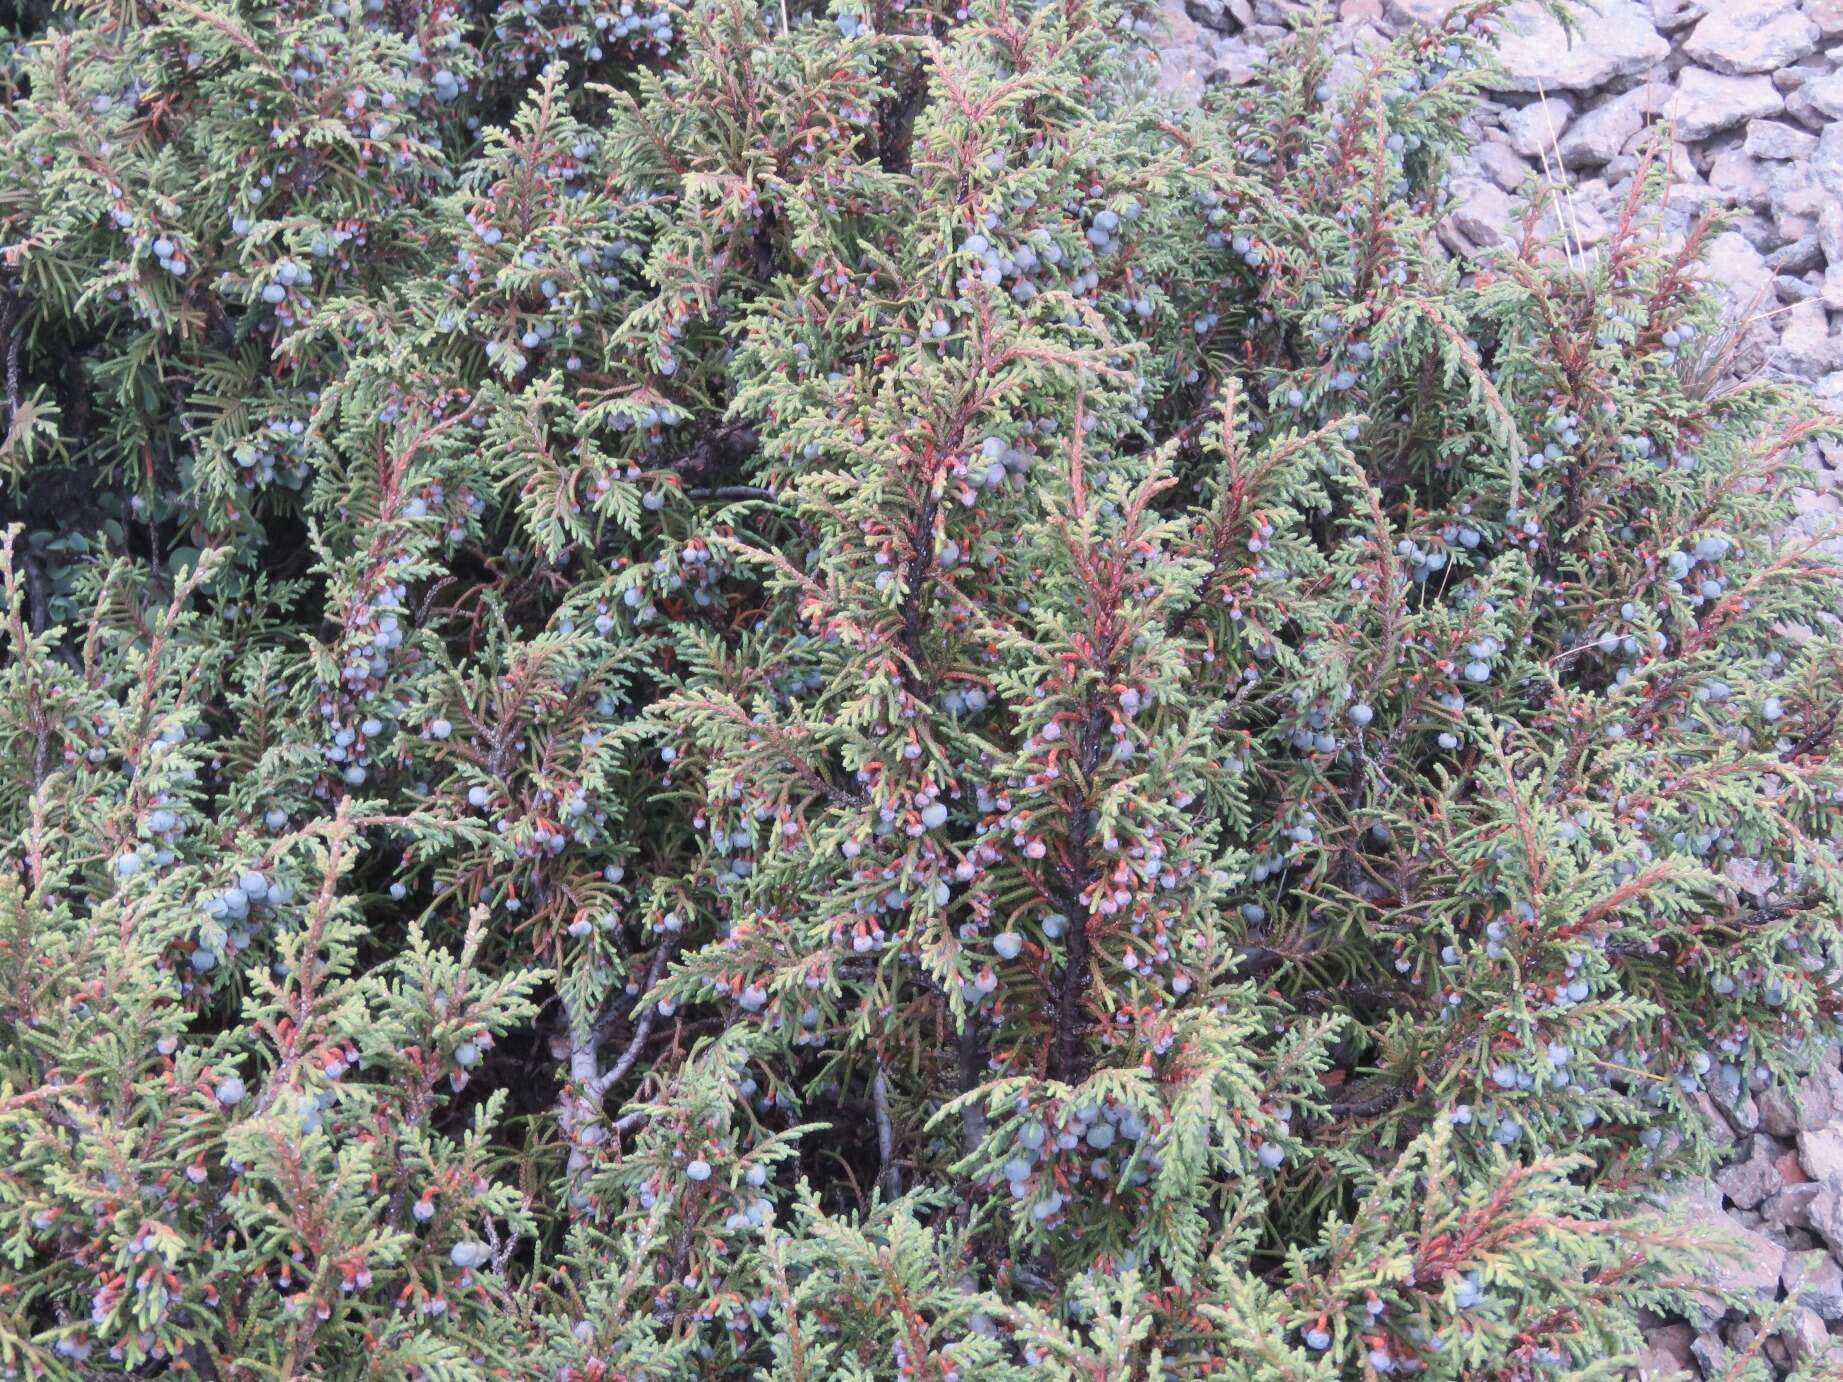 Image of Juniperus monticola subsp. compacta